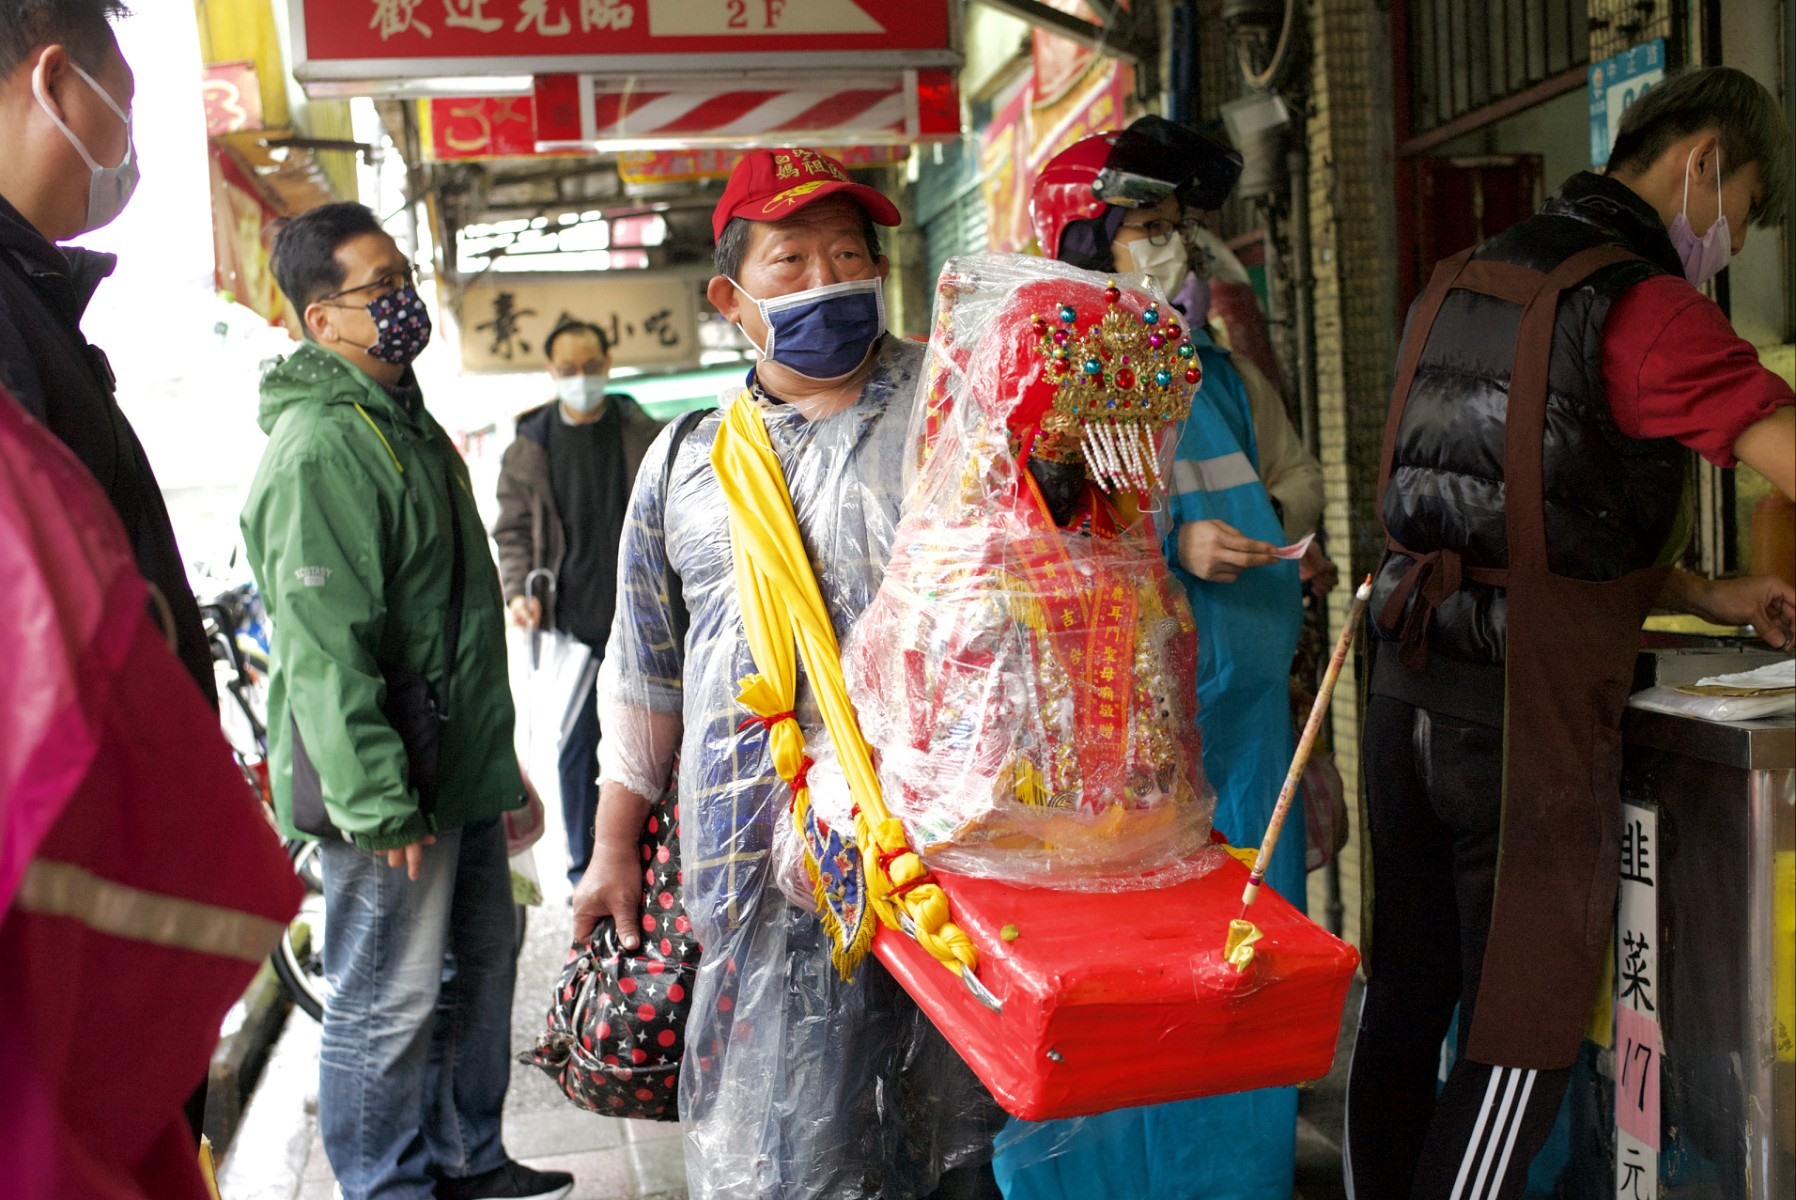 Một người đàn ông mang theo tượng thần Mazu trong Đạo giáo để cầu chúc sức khỏe và thịnh vượng cho công chúng trên đường phố ở thành phố Tân Bắc, Đài Loan (Trung Quốc) vào ngày 21.1.2023. Ảnh: AFP